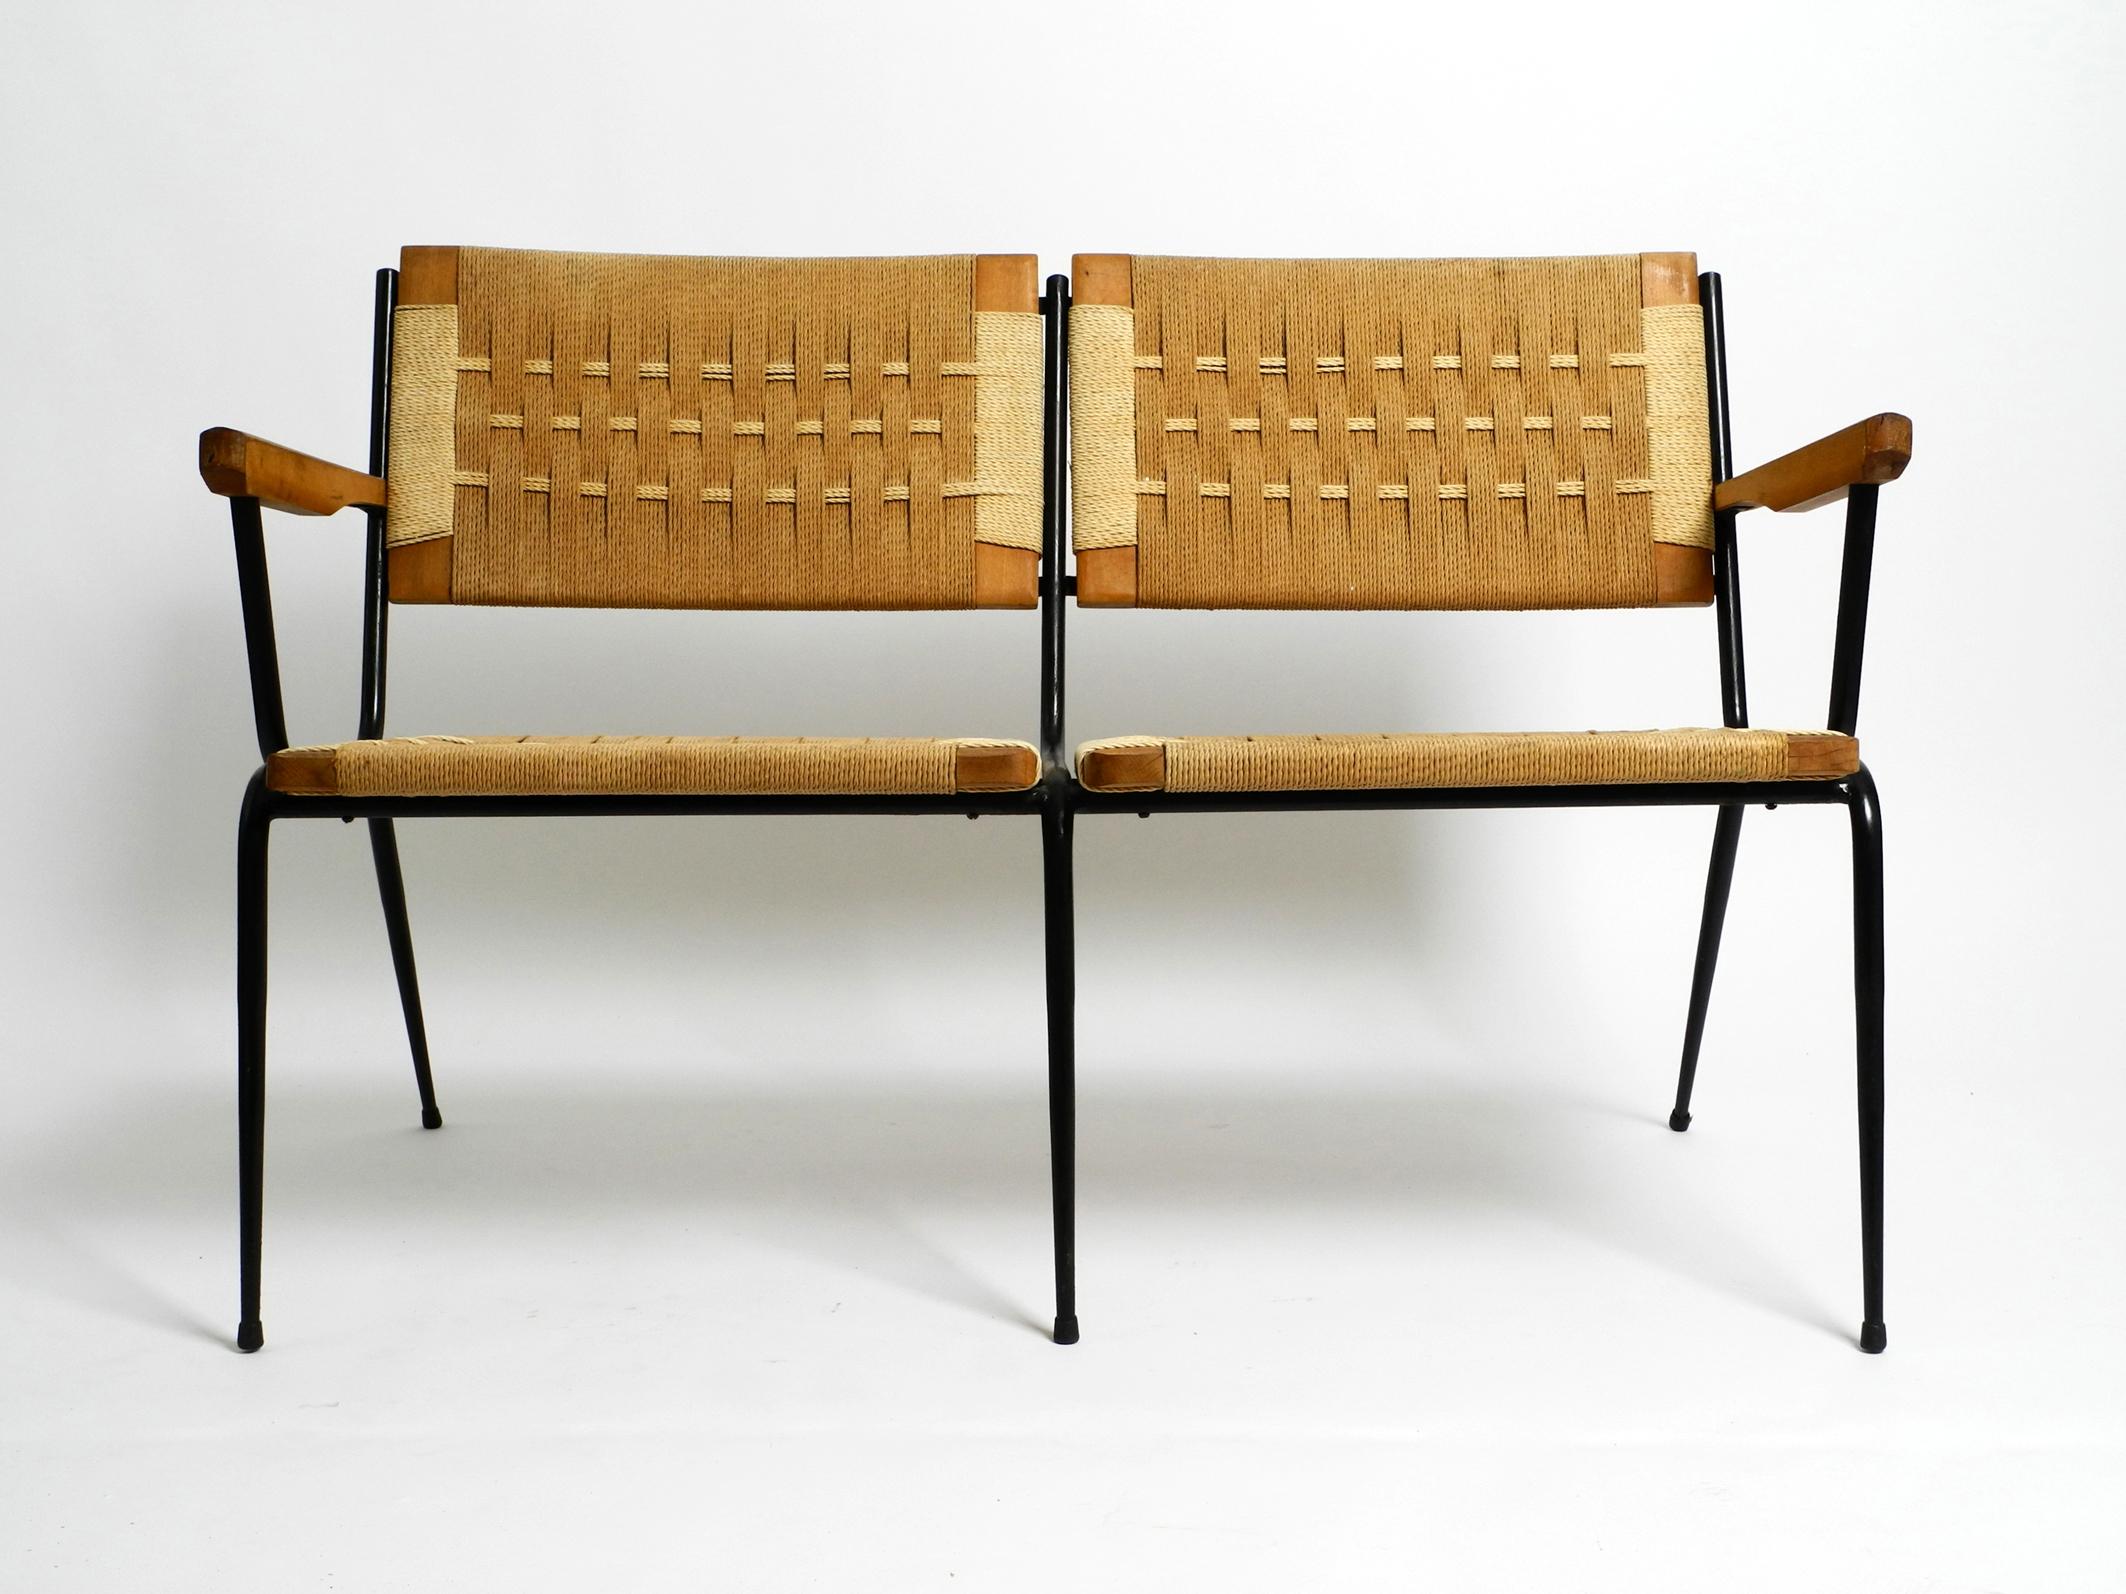 Schöne italienische 2-Sitzer-Bank aus der Mitte des Jahrhunderts aus Eisen.
Die Rahmen für die Sitze und Rückenlehnen sind aus Holz mit Flechtwerk gefertigt.
Großartiges italienisches Design aus den 1950er Jahren. Entwurf von Giuseppe Pagano